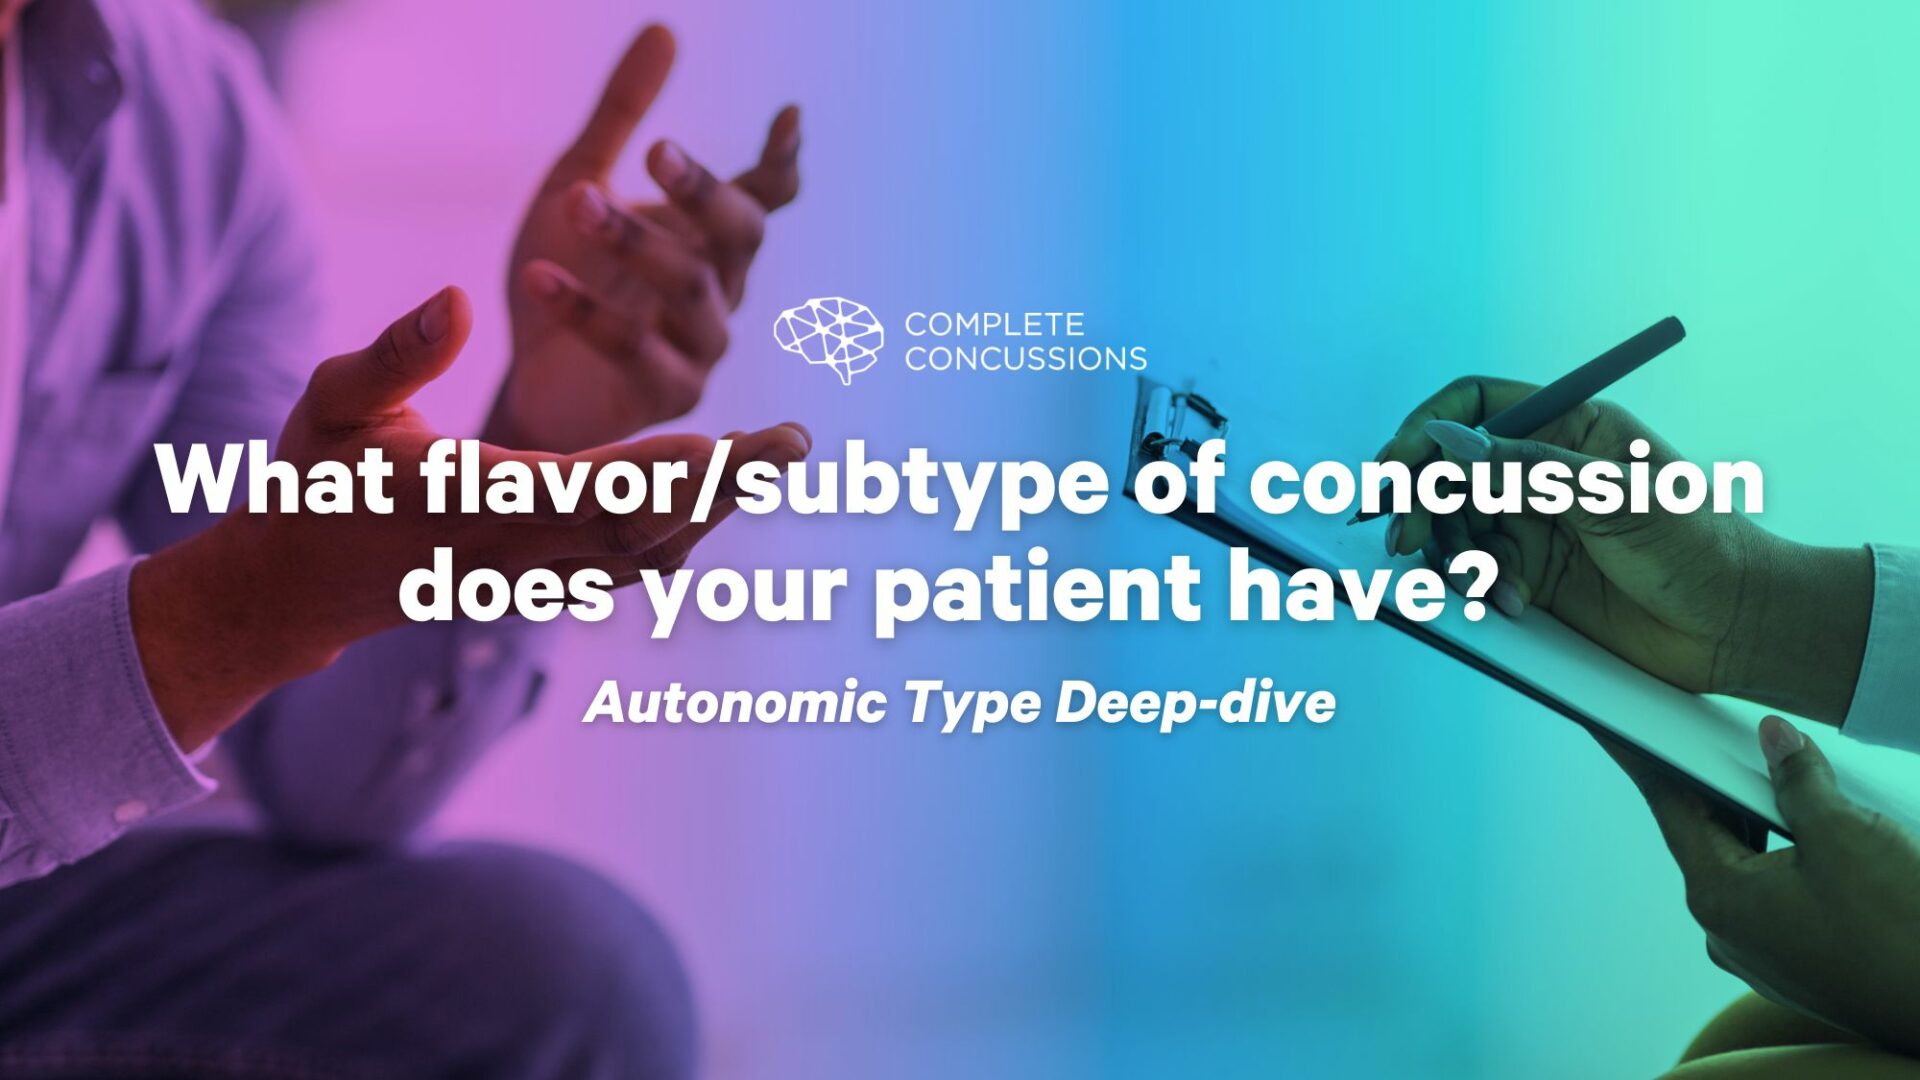 What Flavor/Subtype of Concussion Does Your Patient Have? Autonomic Type Deep-Dive